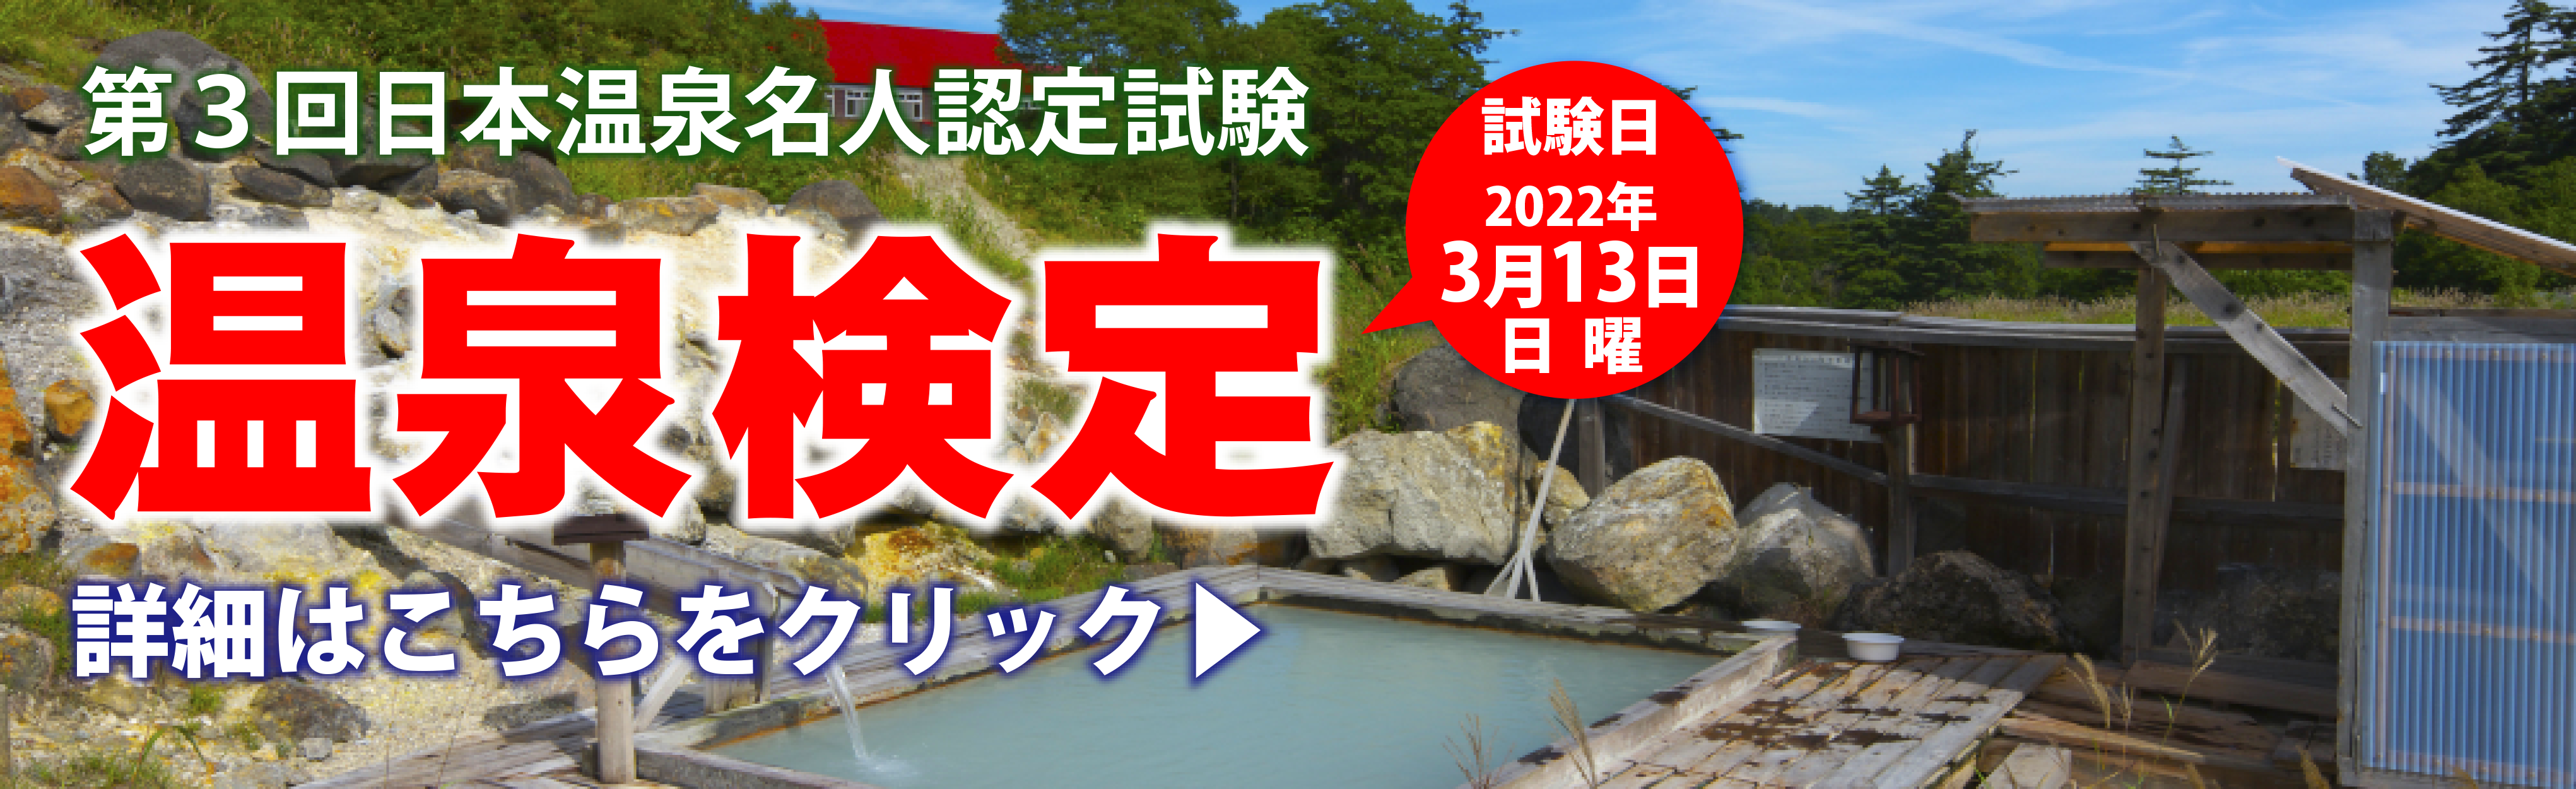 第3回日本温泉名人認定試験「温泉検定」のご案内